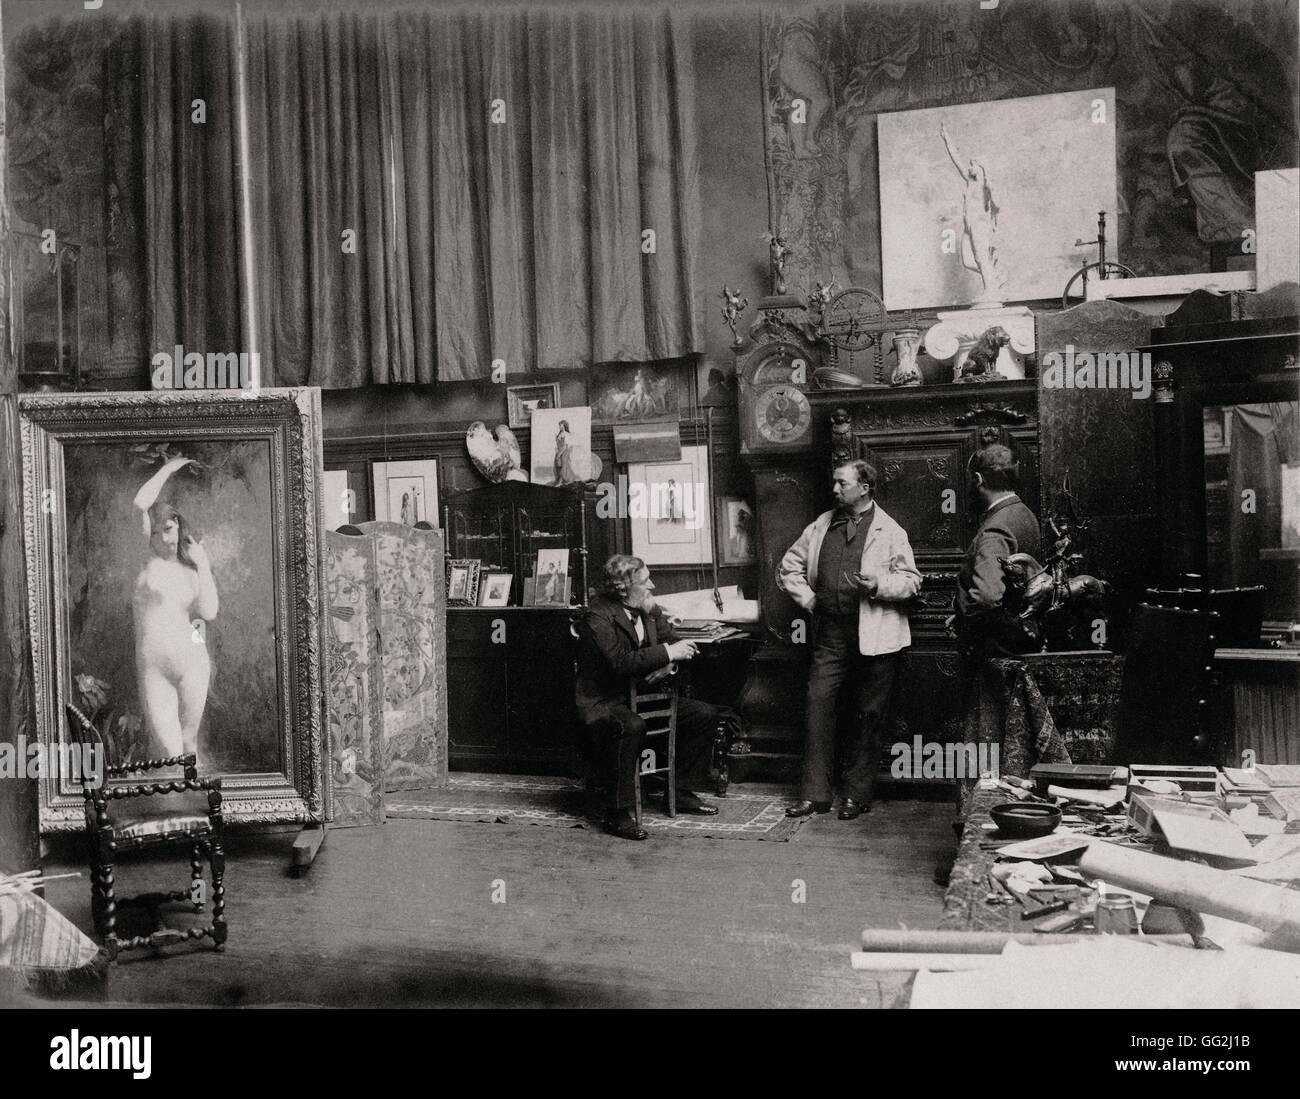 Französischer Maler Jules Lefebvre in seinem Atelier befindet 5 Rue De La Bruyère in Paris. Auf der linken Seite, das Gemälde "Undine", gemacht von Lefebvre, 1882 und an das Museum of Fine Arts in Budapest befinden. Foto von Edmond Bénard c.1882. Albumen print. Stockfoto